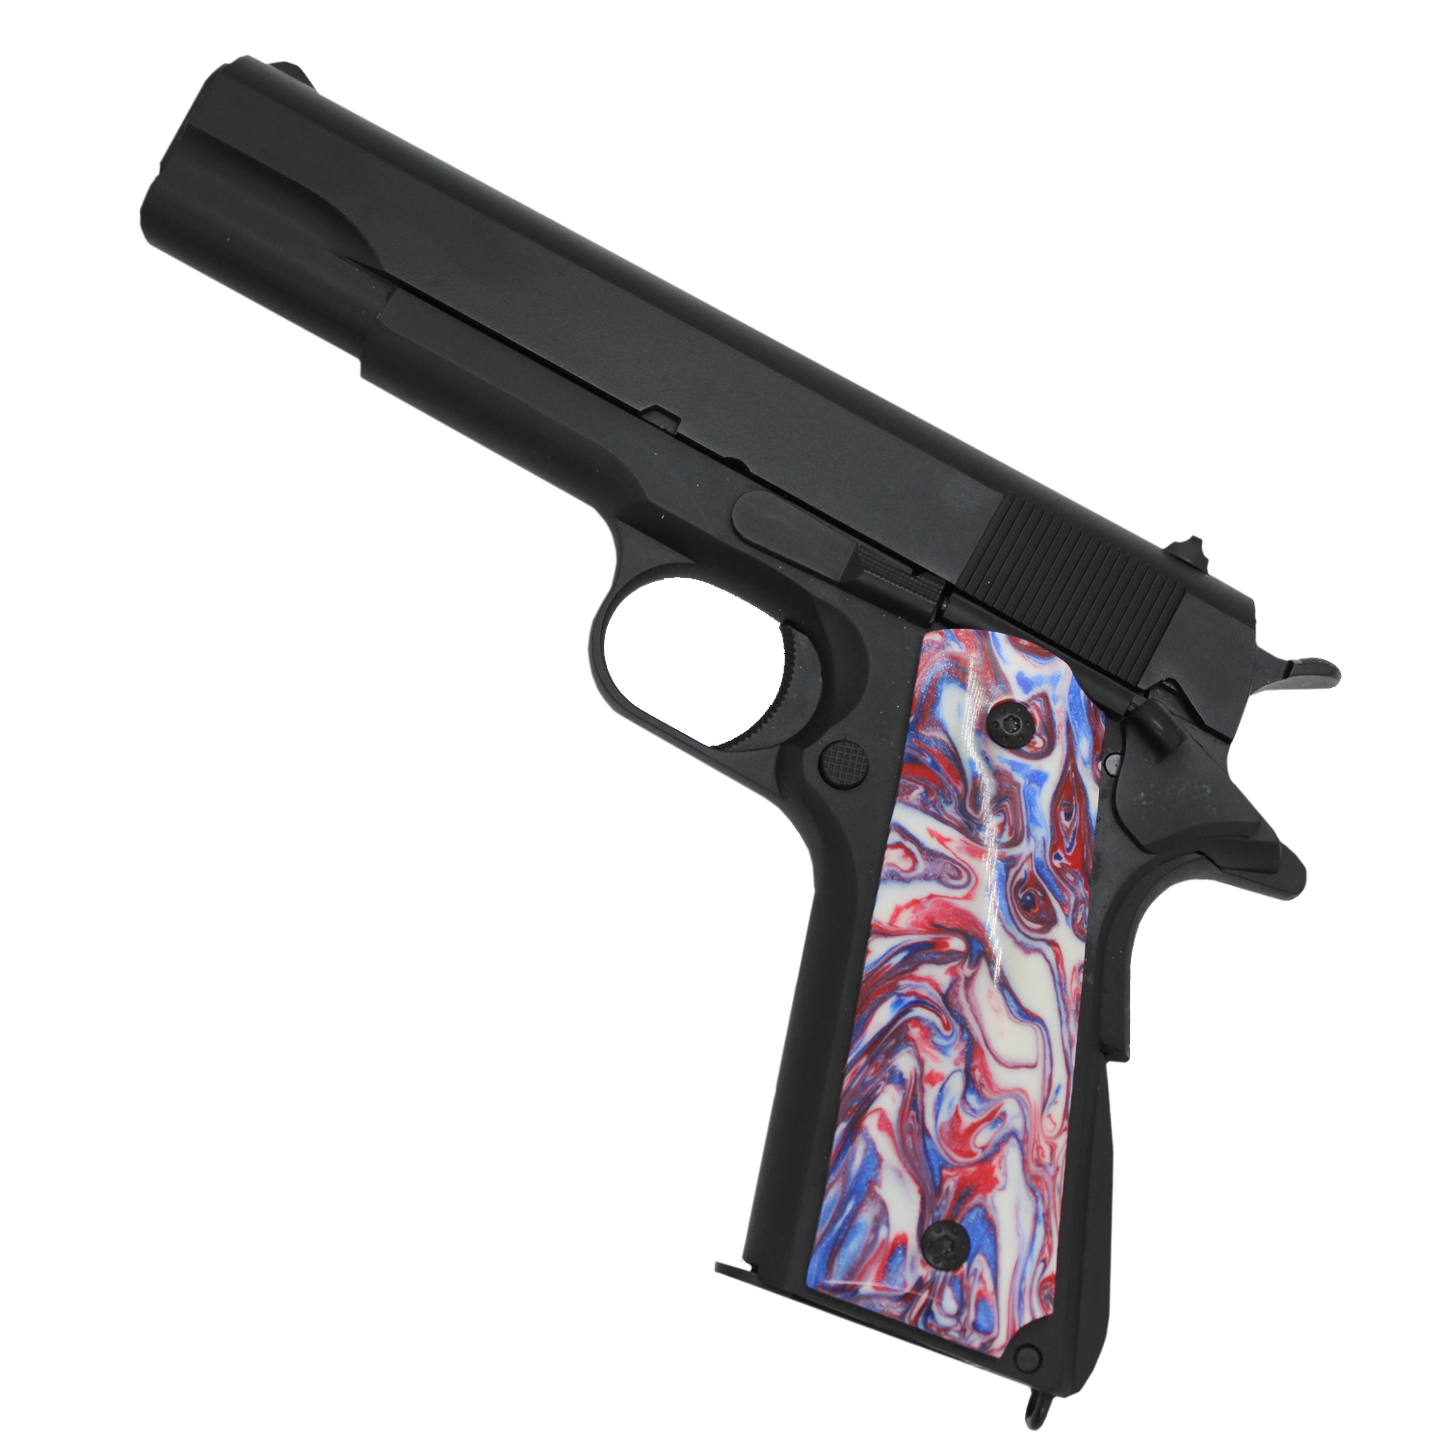 Custom 1911 Black GBB Pistol with Marble Grips (Gas) - Gel Blaster Guns, Pistols, Handguns, Rifles For Sale